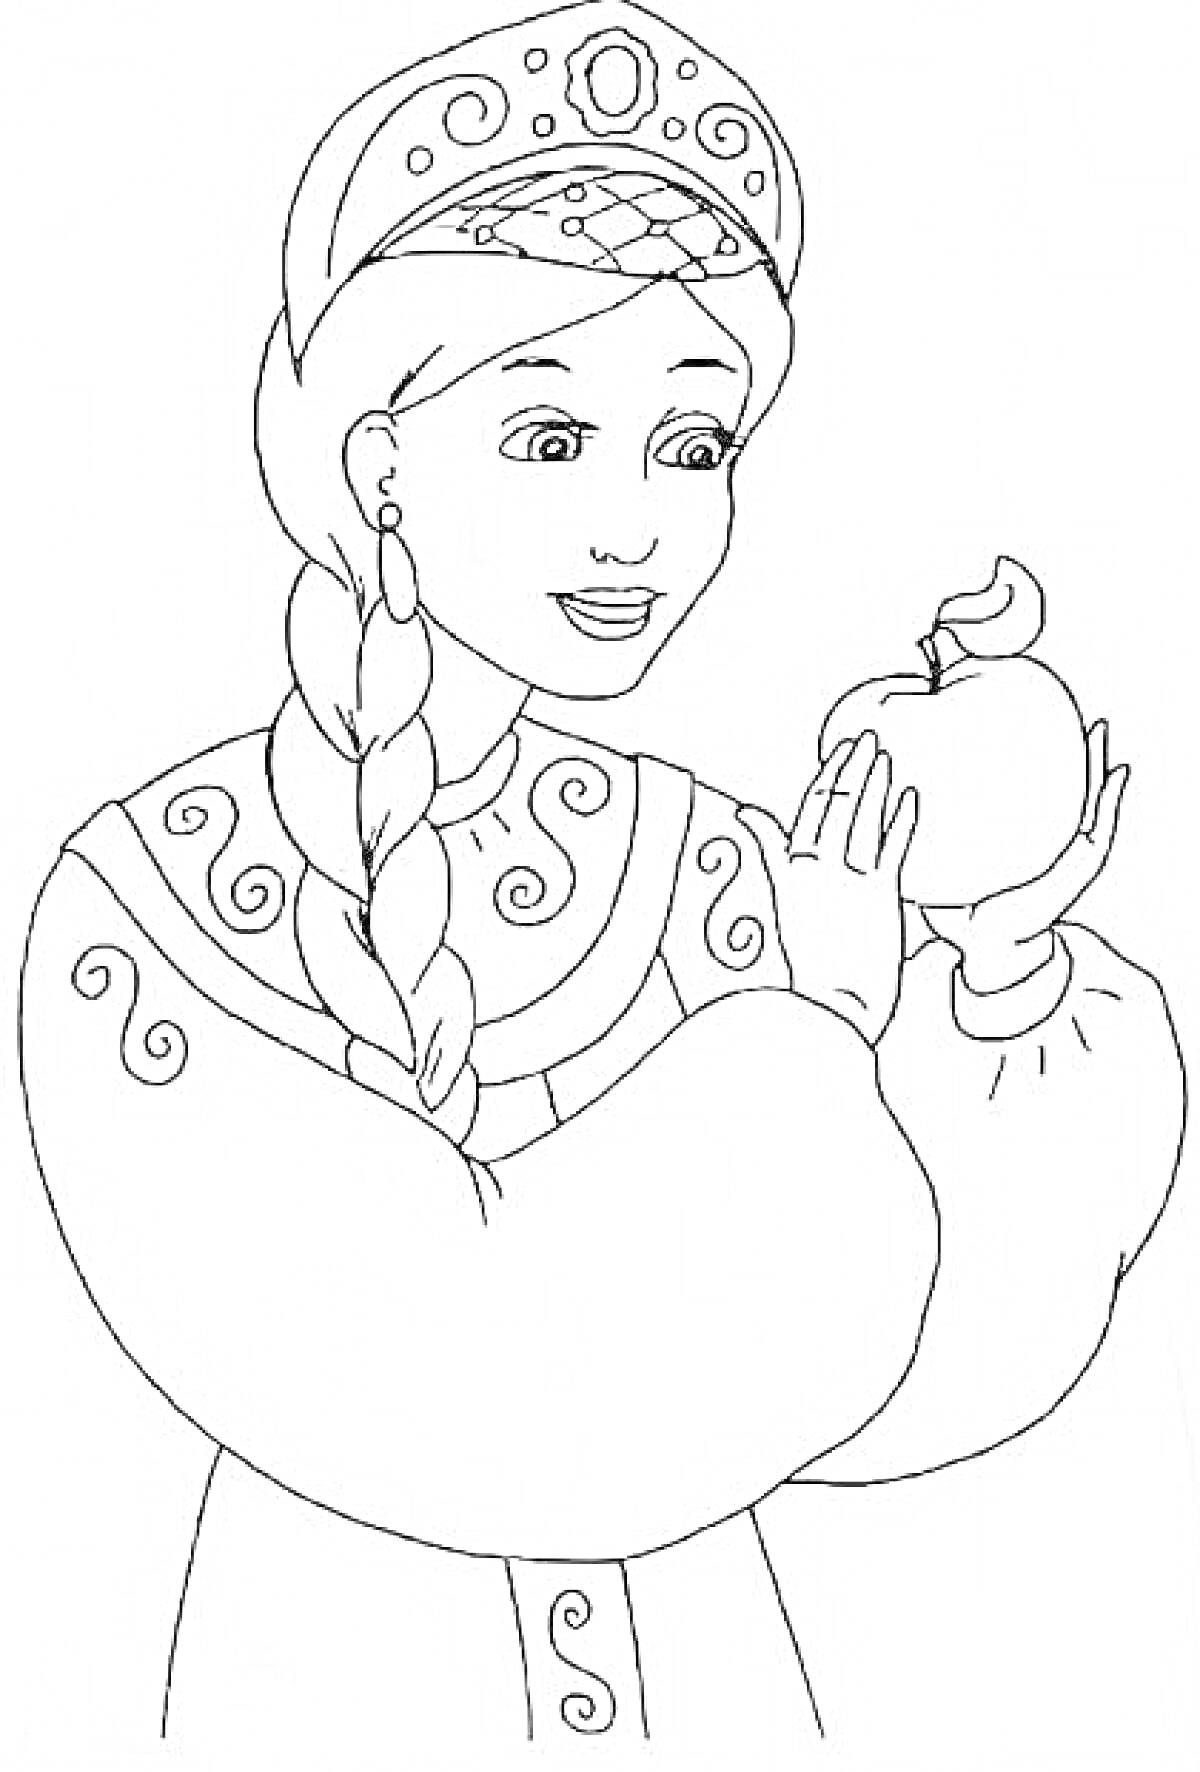 Царевна с косой в кокошнике держит яблоко